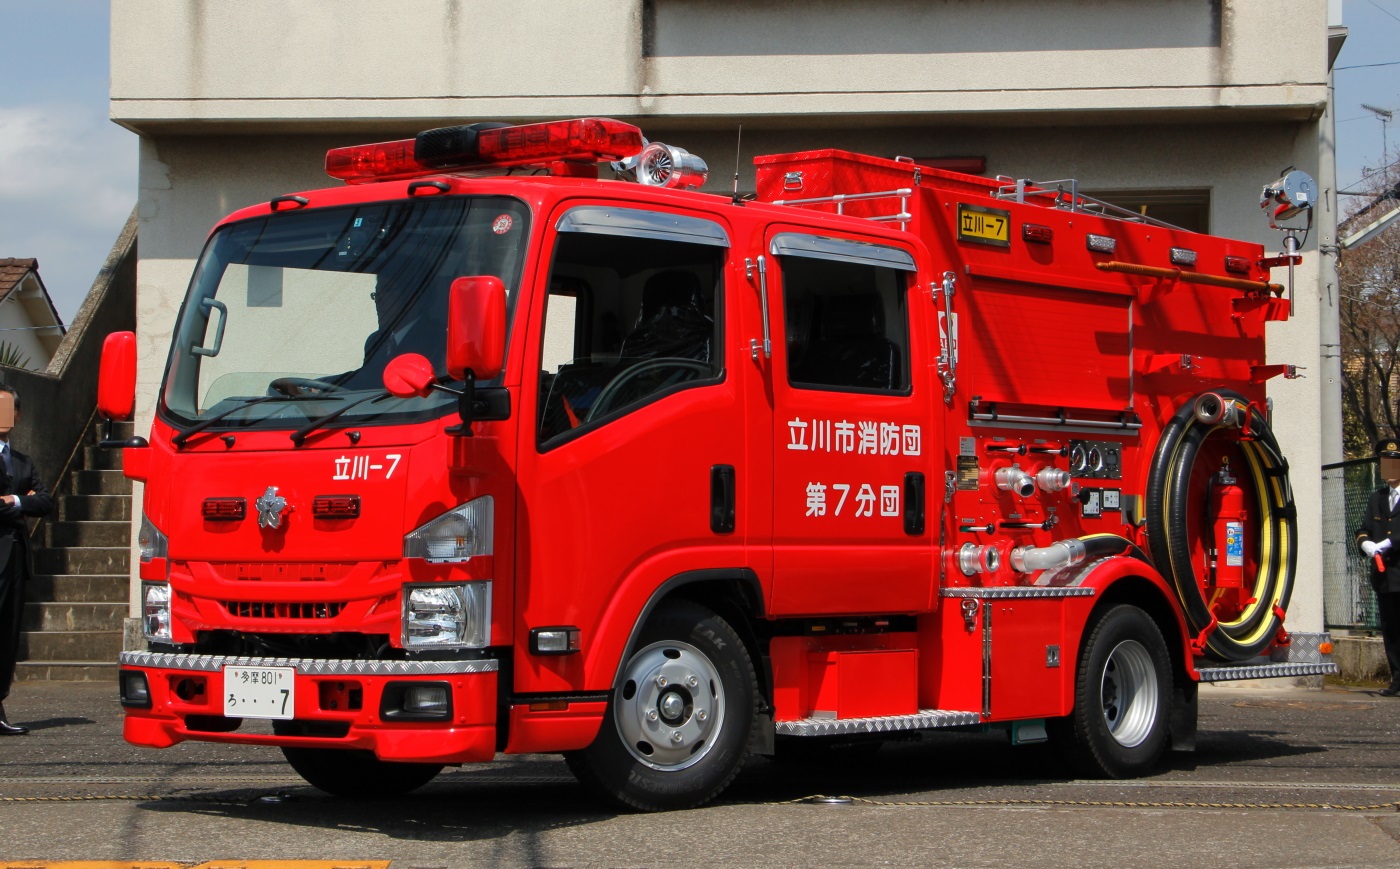 立川市消防団 最新のポンプ車 冴えないブログの綴りかた